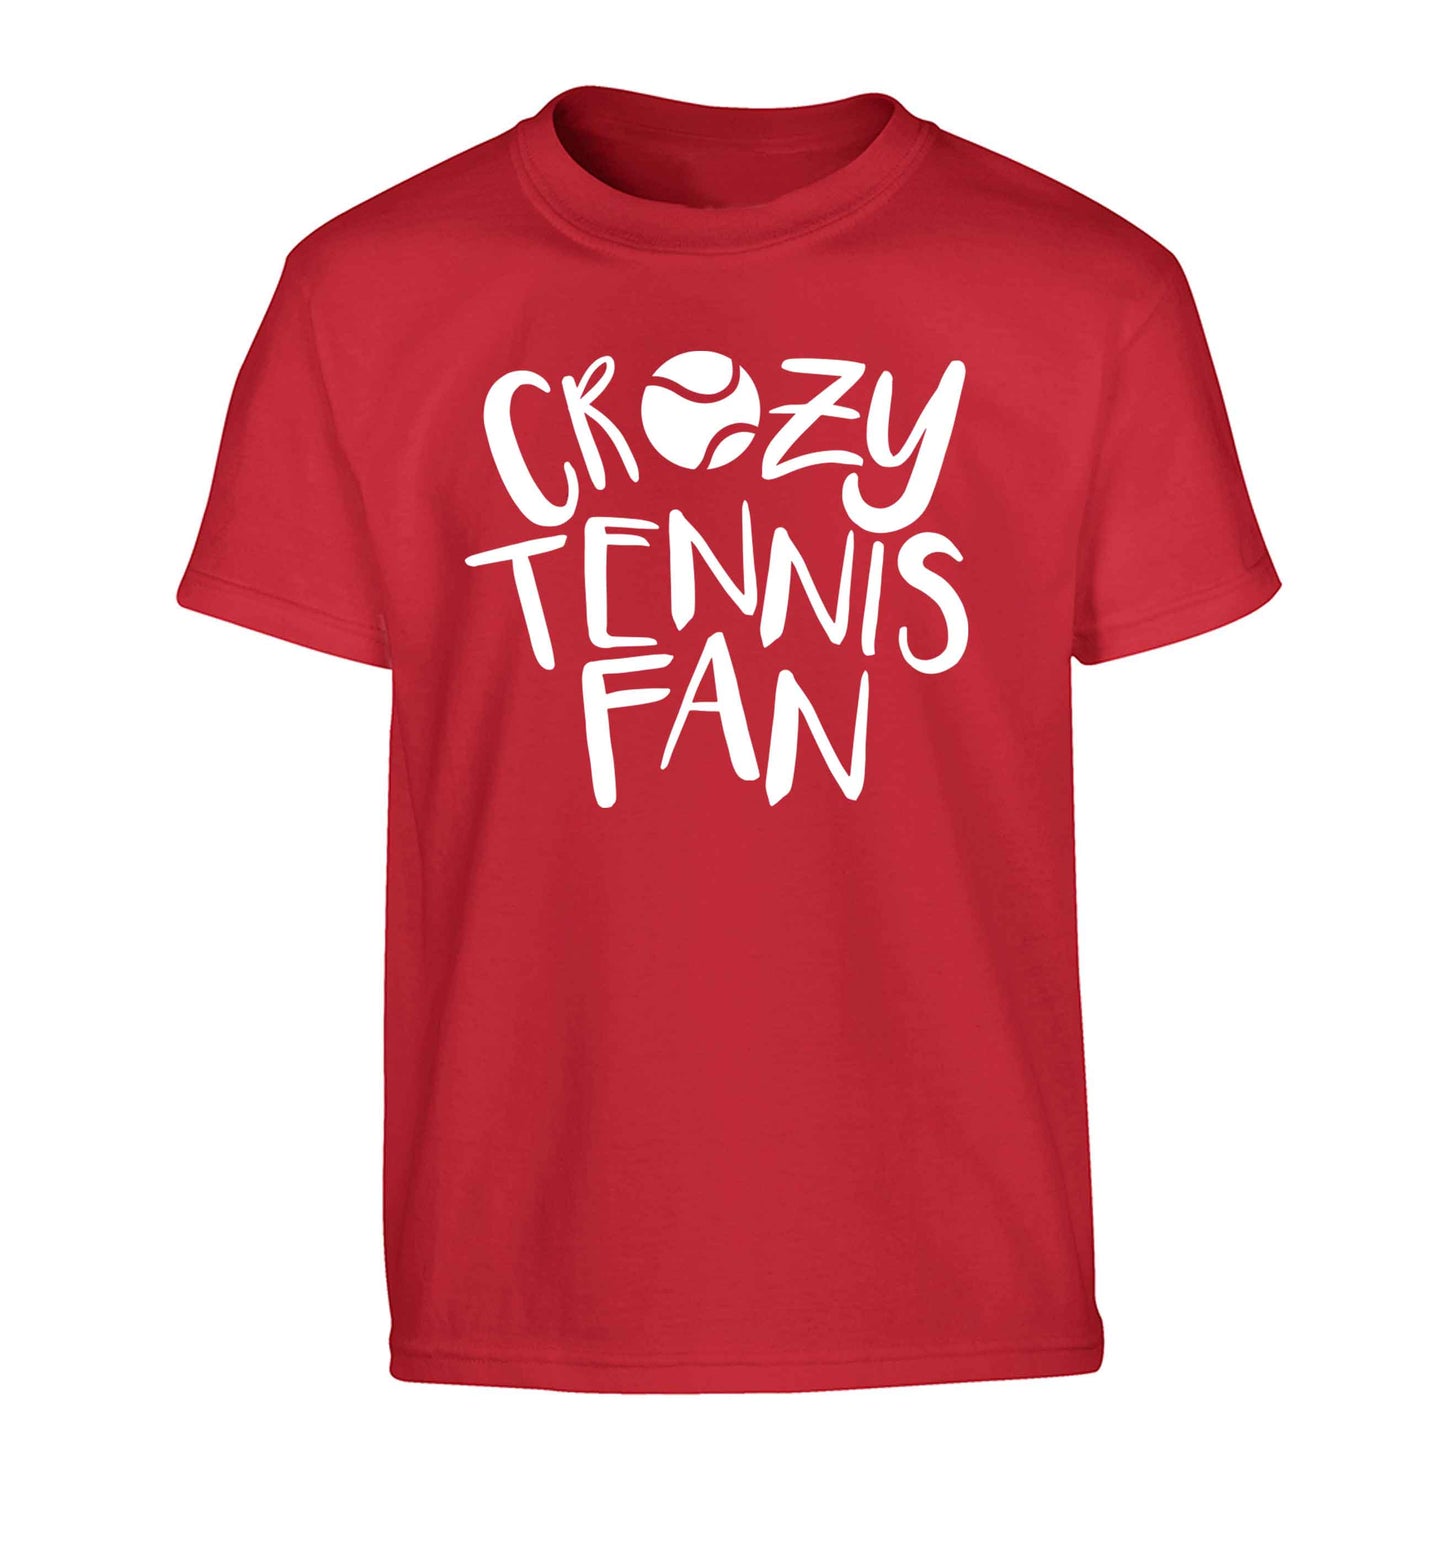 Crazy tennis fan Children's red Tshirt 12-13 Years